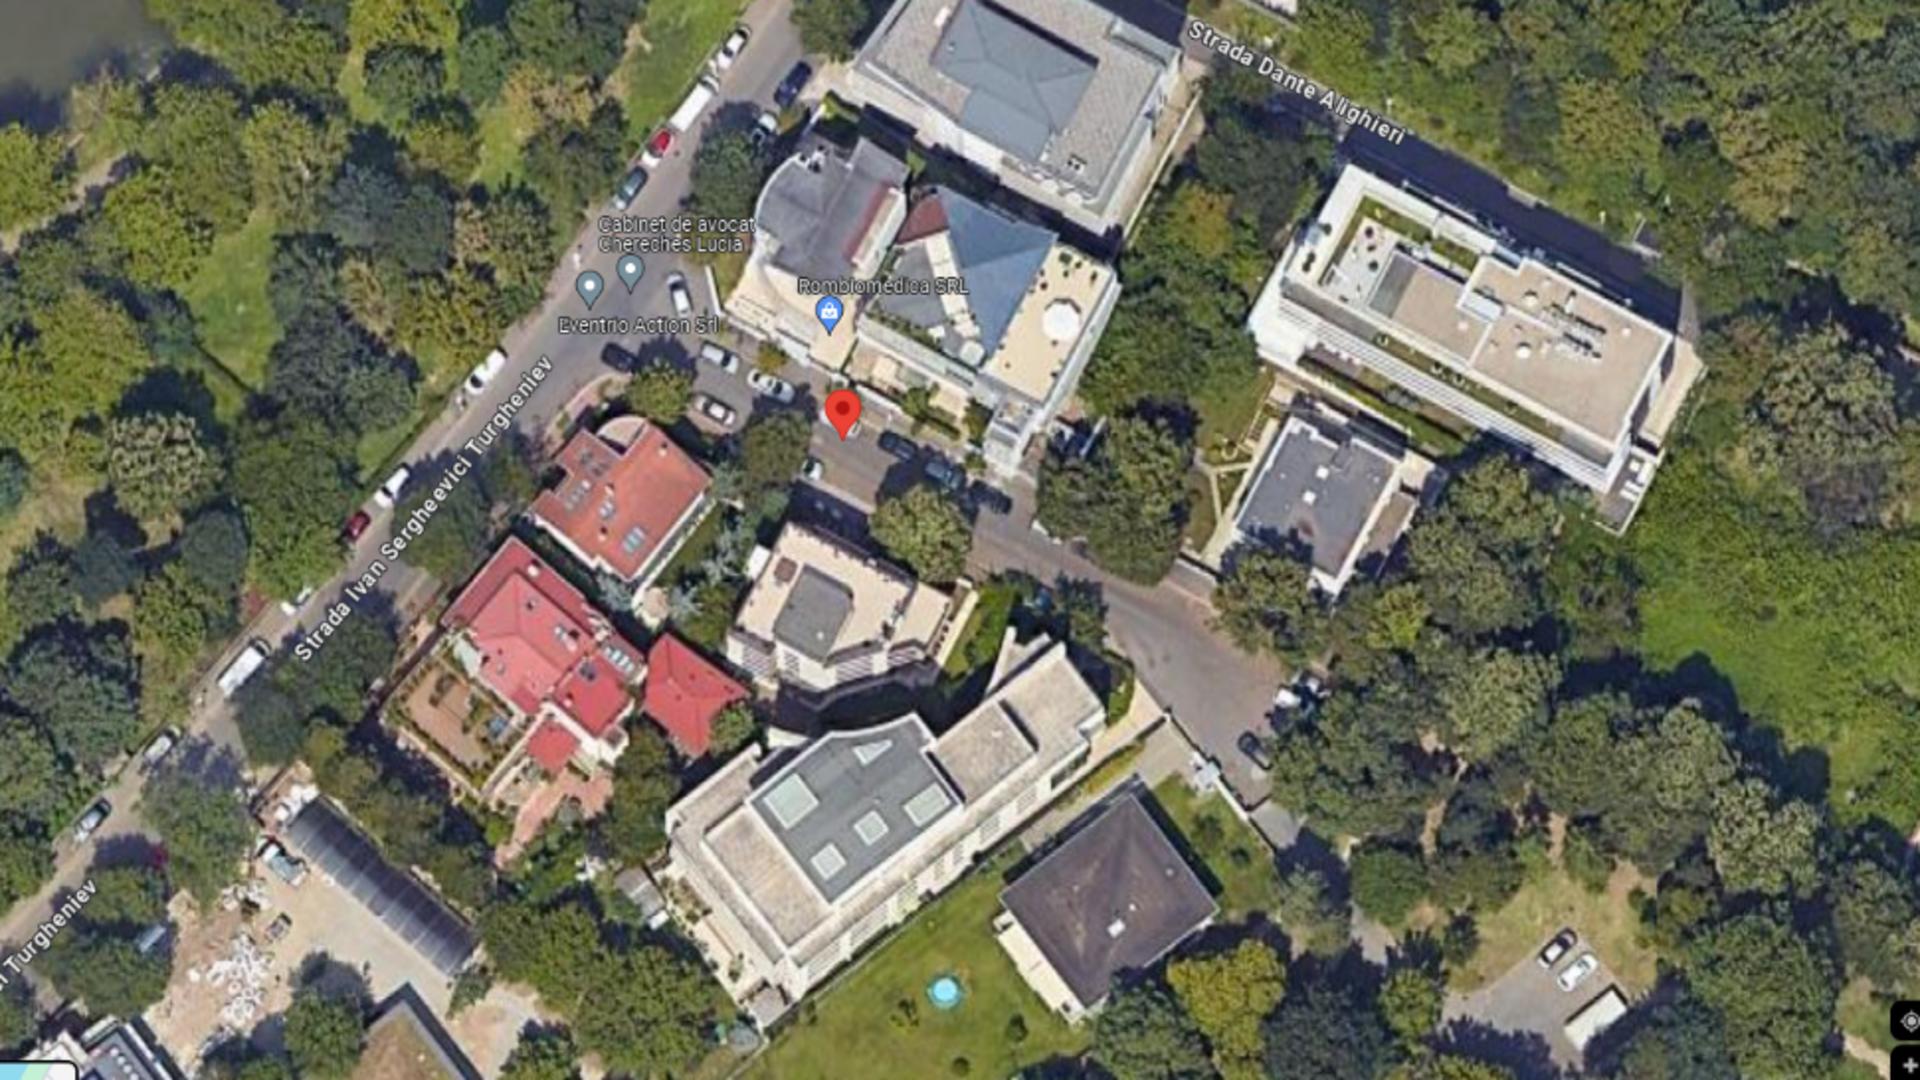 Guvernul pregătește încă o vilă de protocol, lângă cea în care locuiește acum Iohannis Foto: Google maps